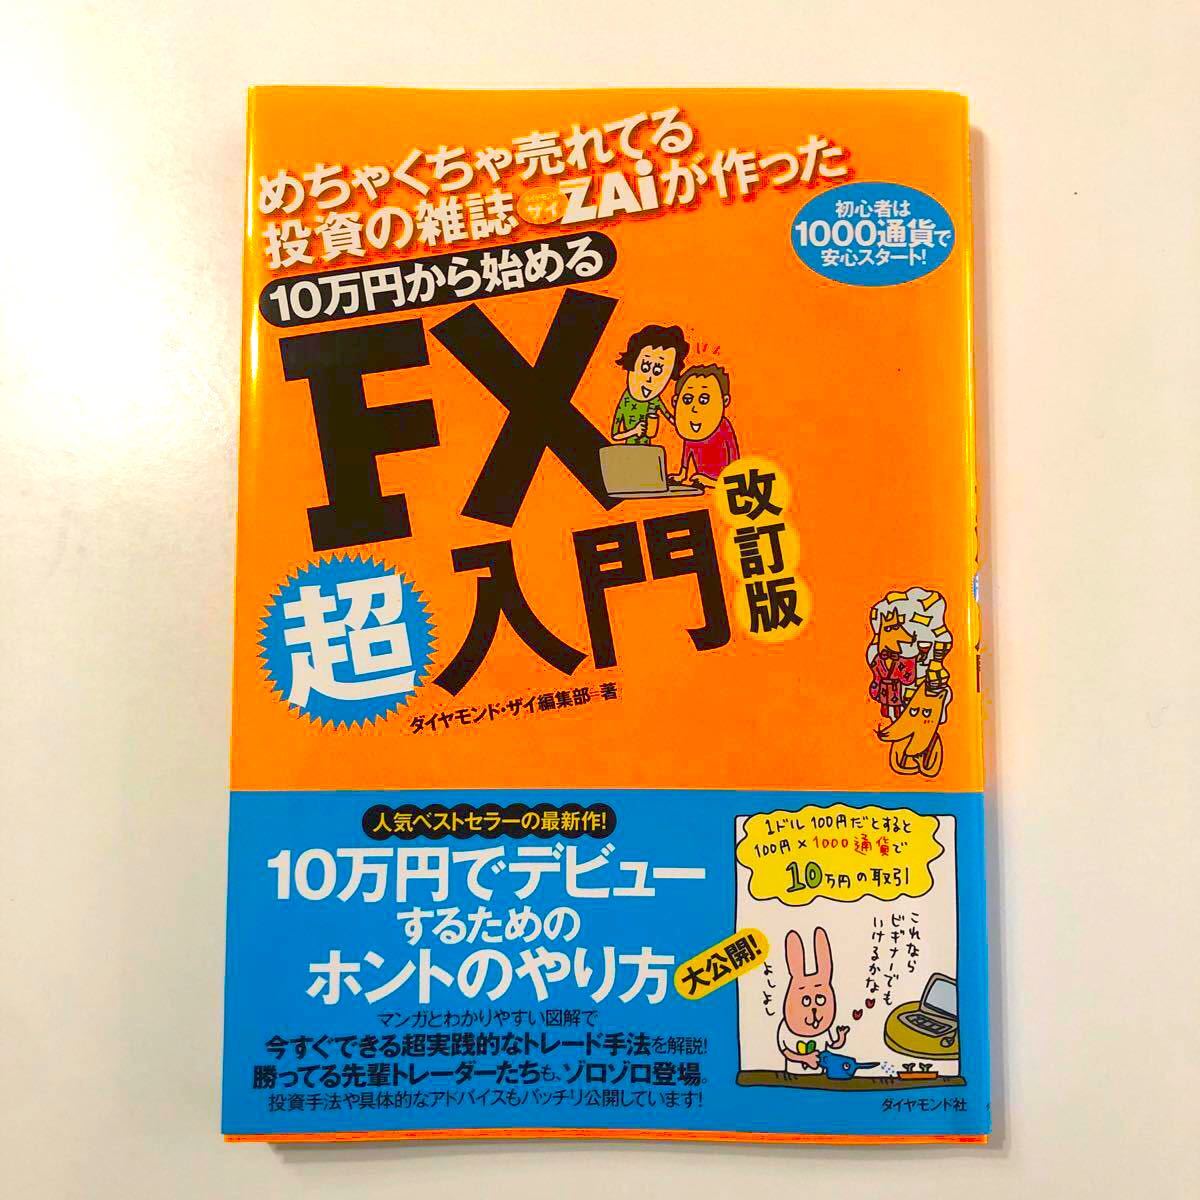 美品 めちゃくちゃ売れてる投資の雑誌ザイが作った 10万円から始めるFX超入門 改定版